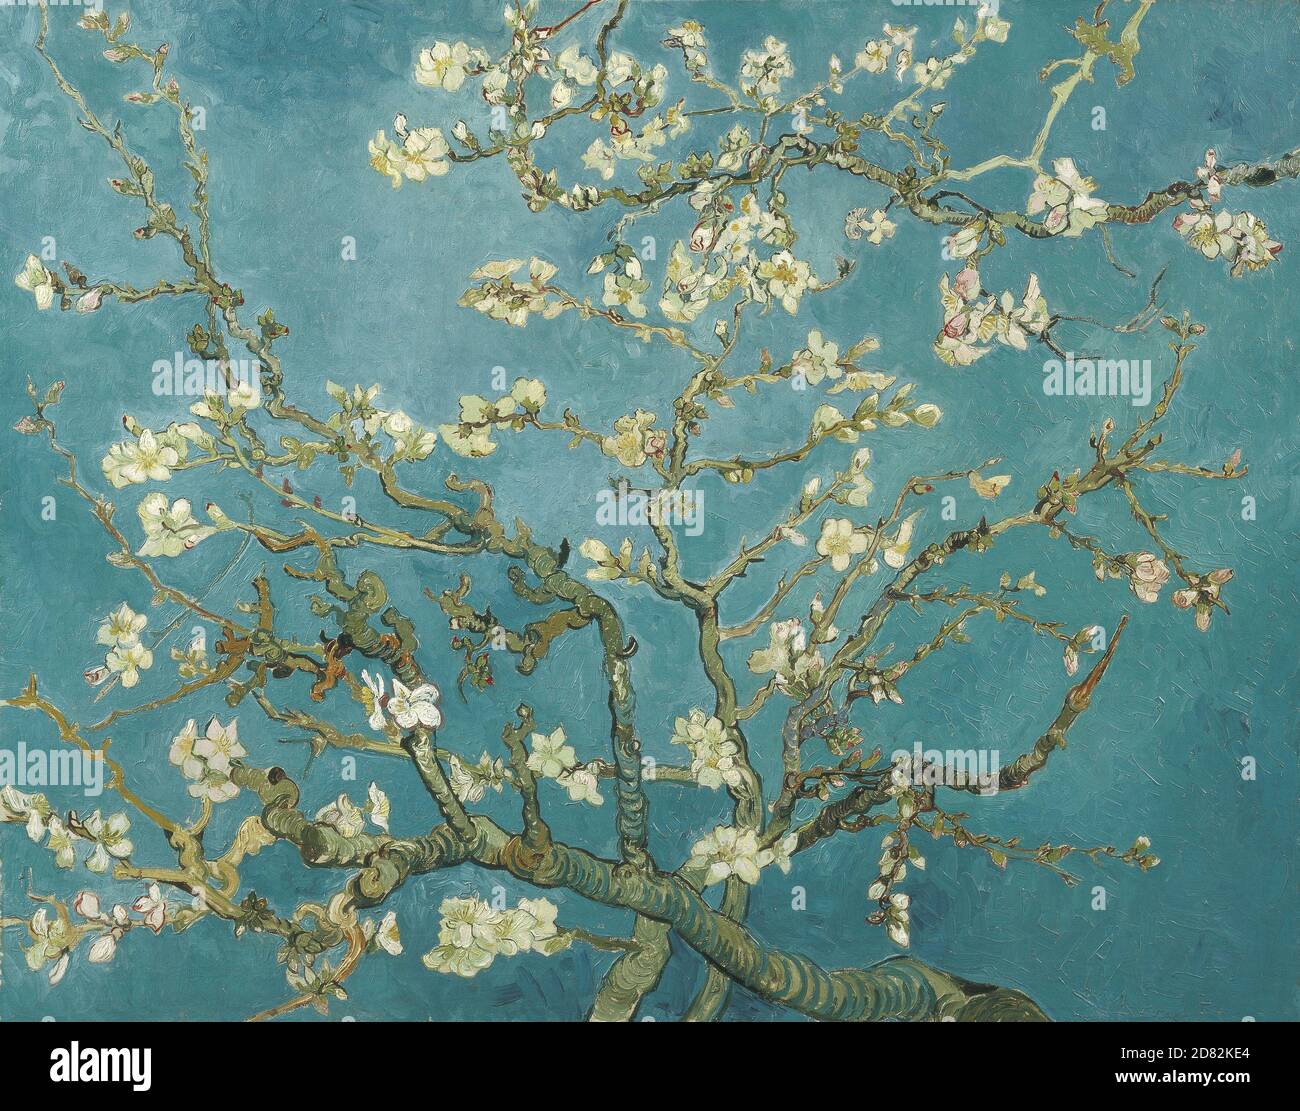 Titre: Amande Blossom Créateur: Vincent van Gogh Date: 1890 Moyen: Huile sur toile Dimensions: 73.3 x 92.4 cm emplacement: Musée Van Gogh, Amsterdam Banque D'Images